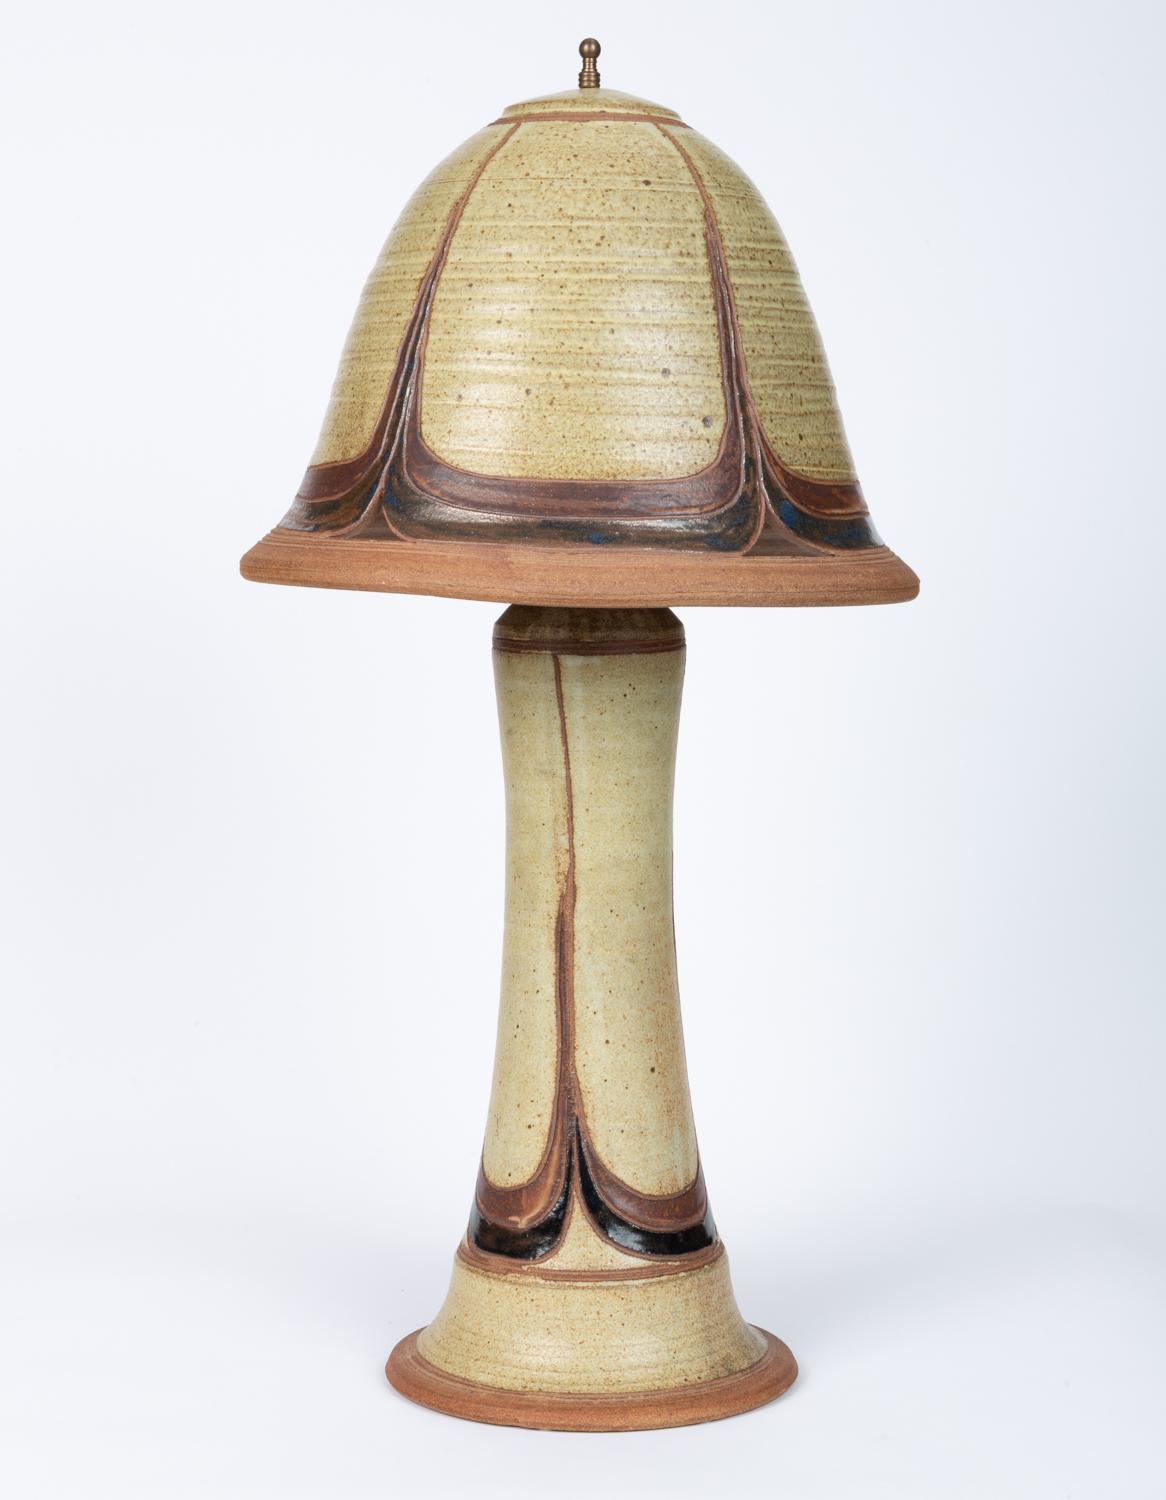 American Studio Lamp with Ceramic Lamp Shade